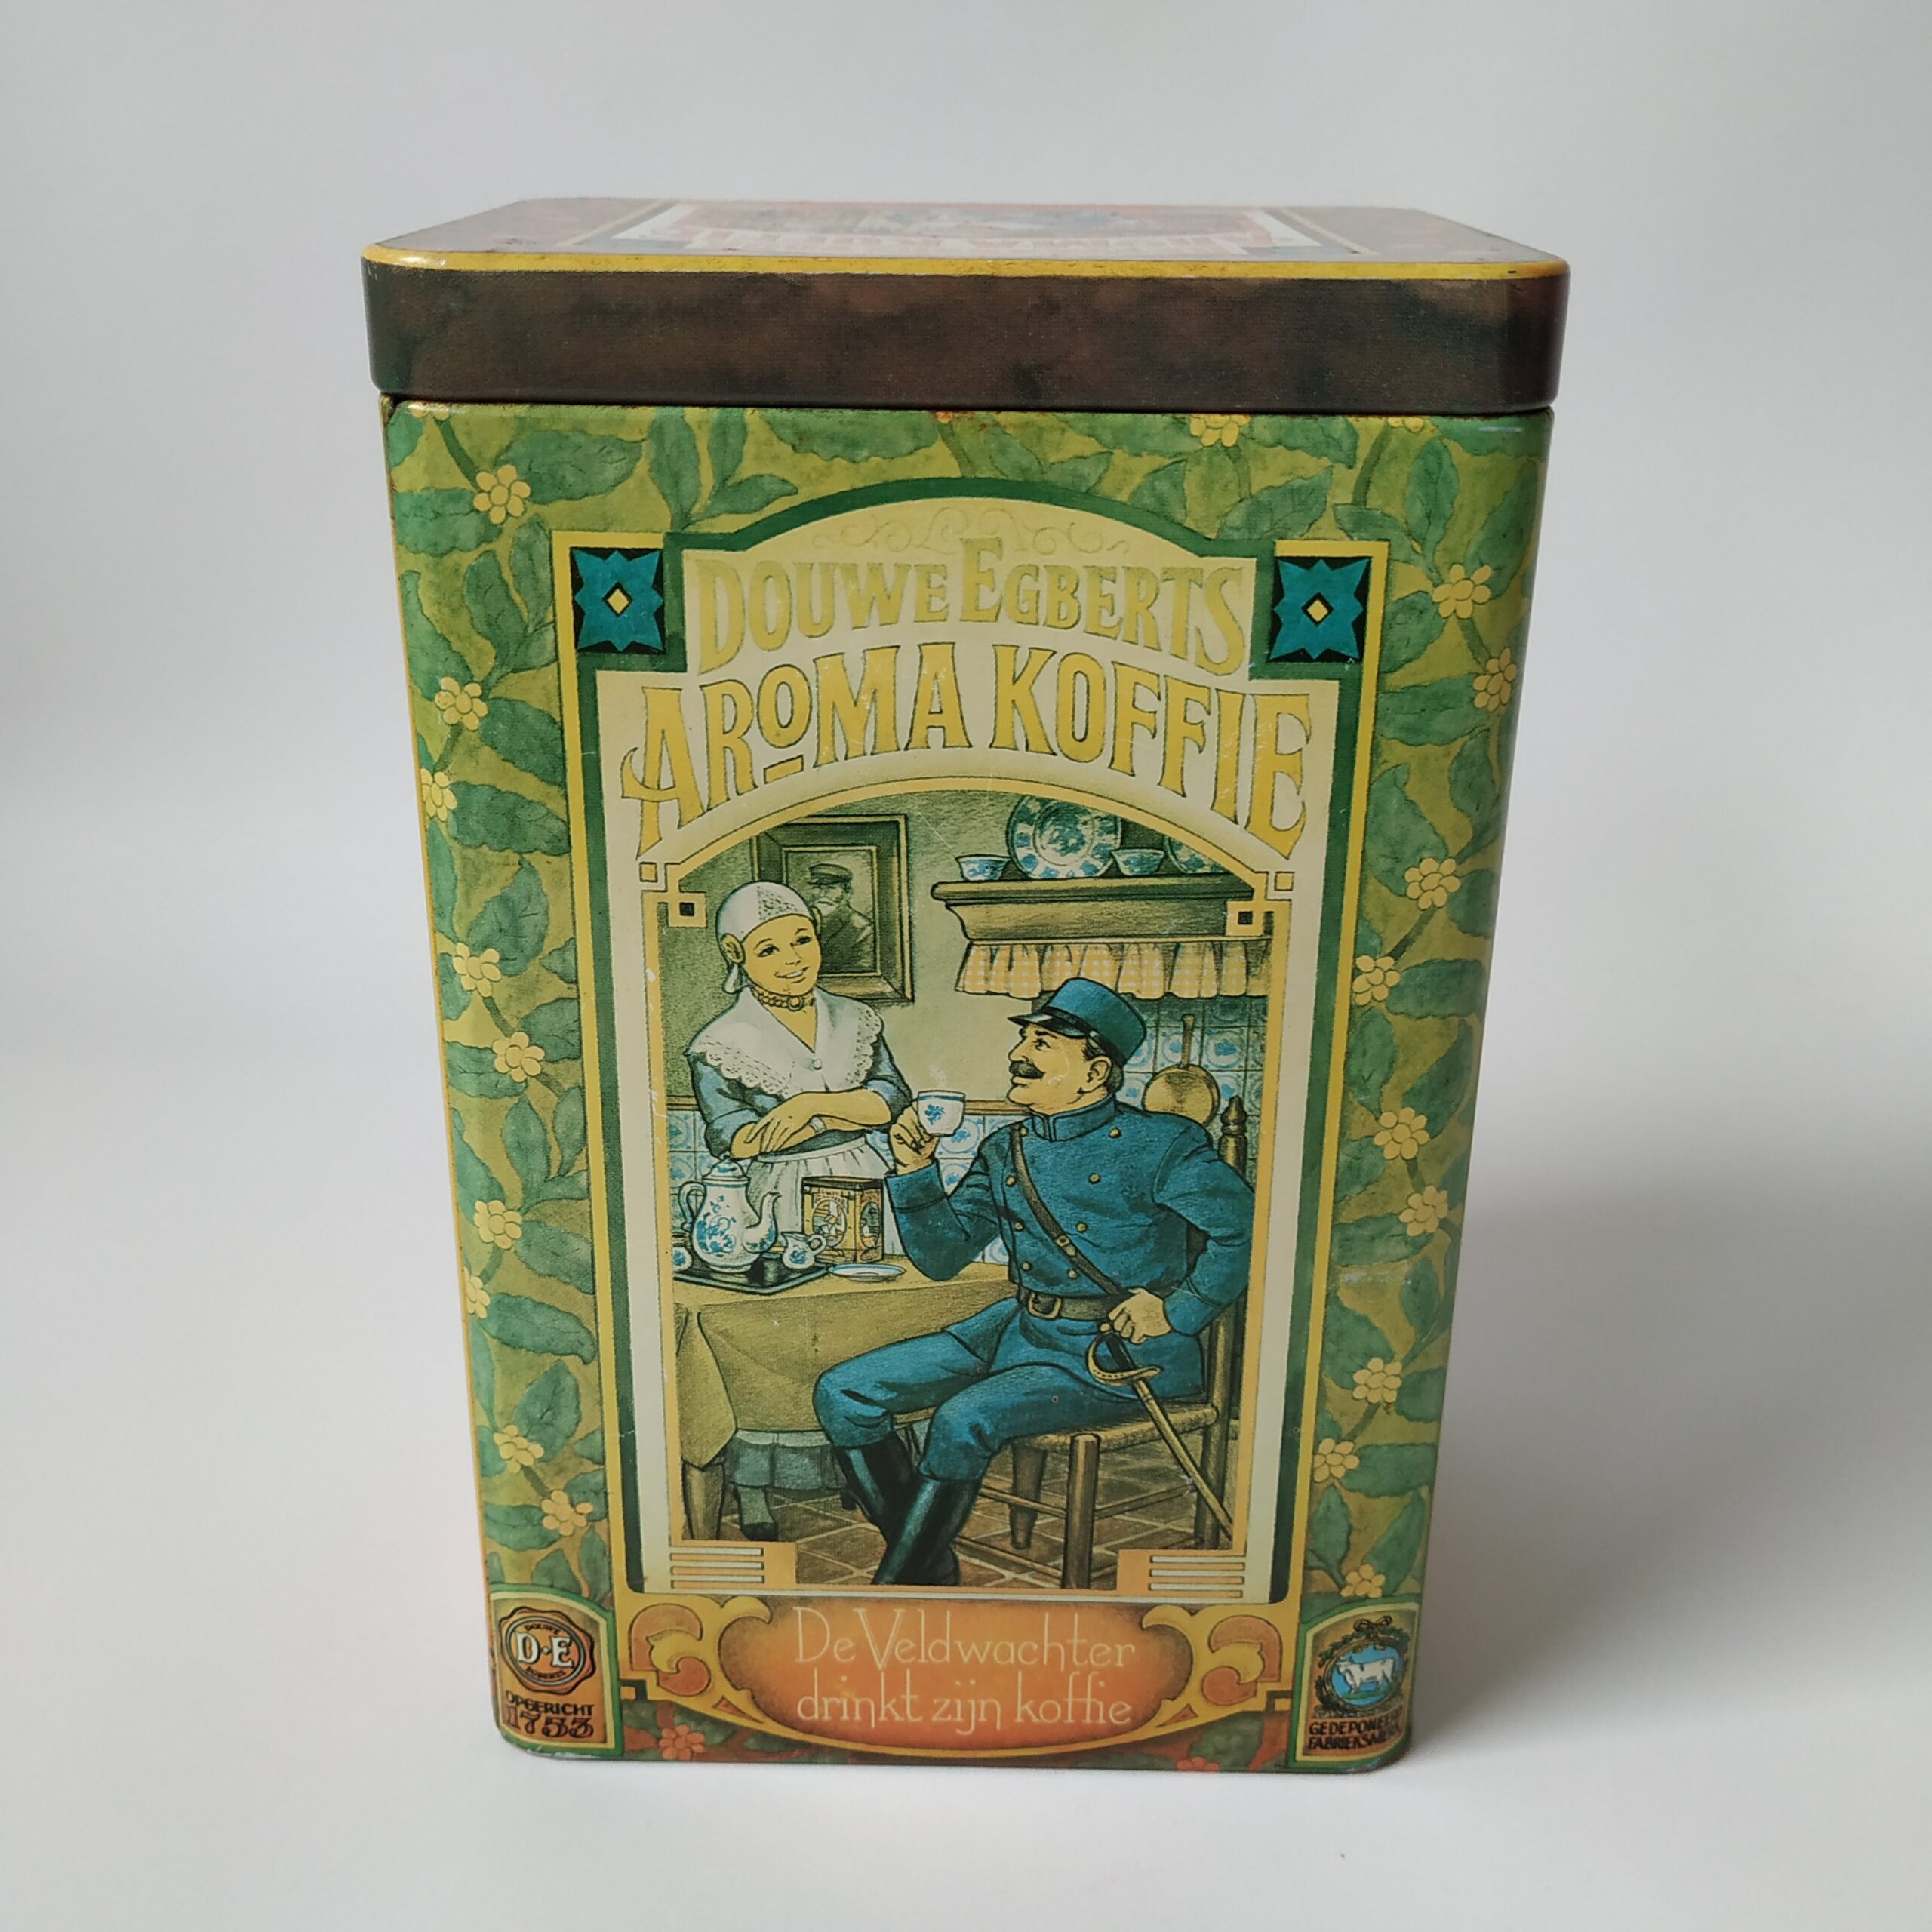 Blik – bewaarbus voor aroma koffie van Douwe Egberts – afm. 18x12x9 cm (3)